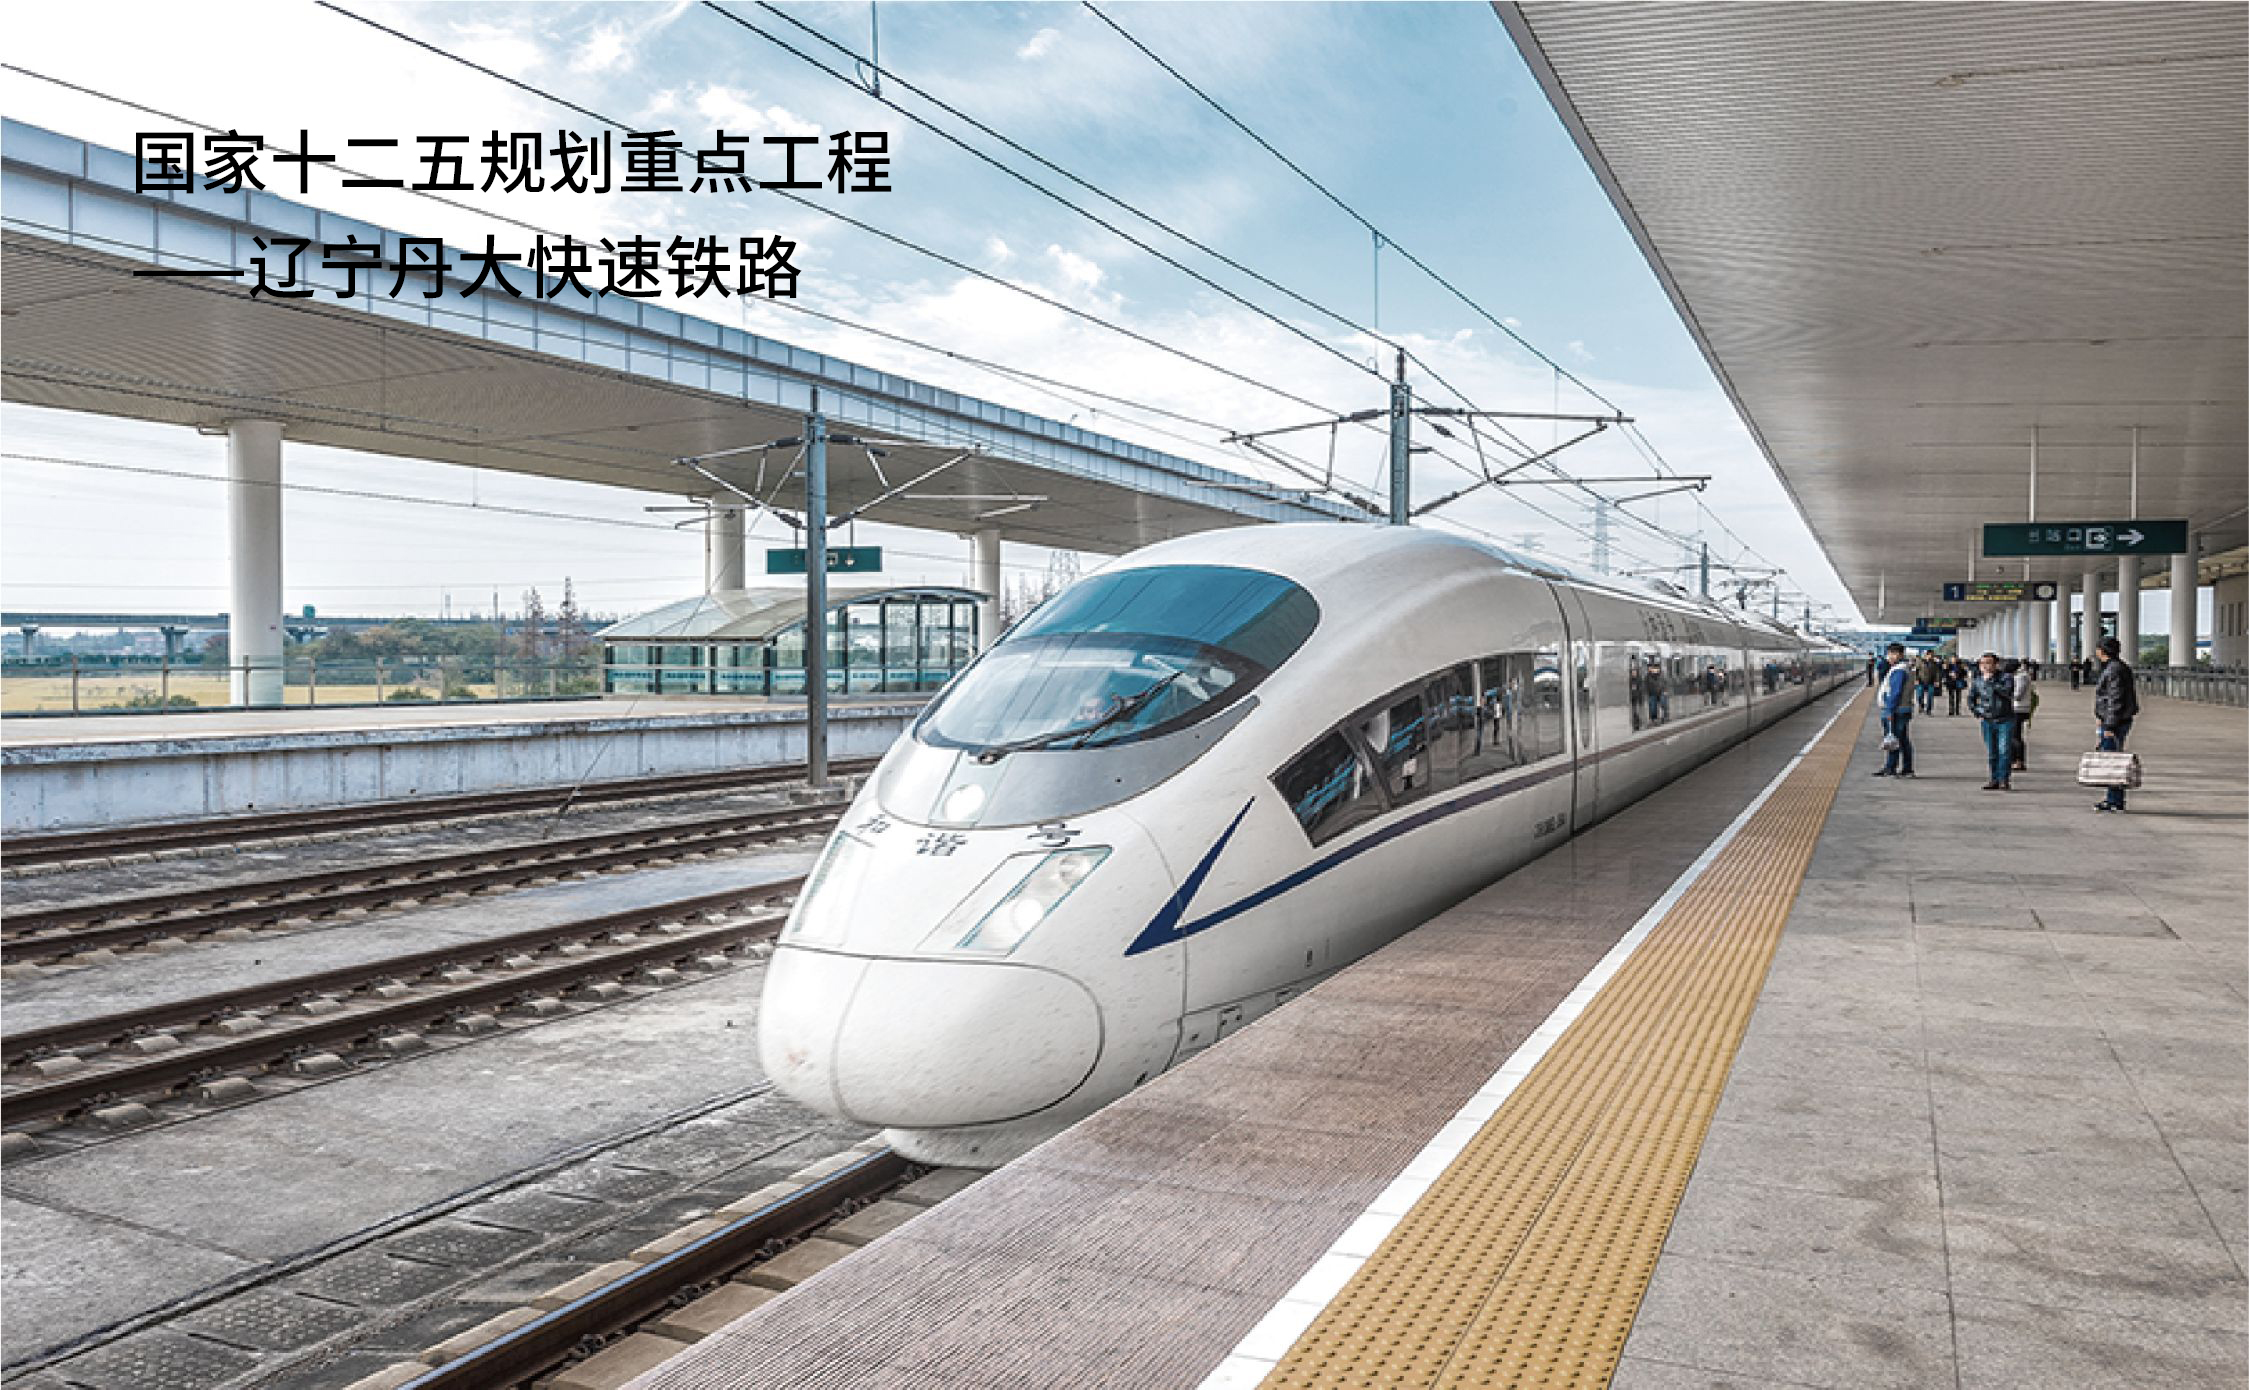 16 国家十二五规划重点工程——辽宁丹大快速铁路.jpg